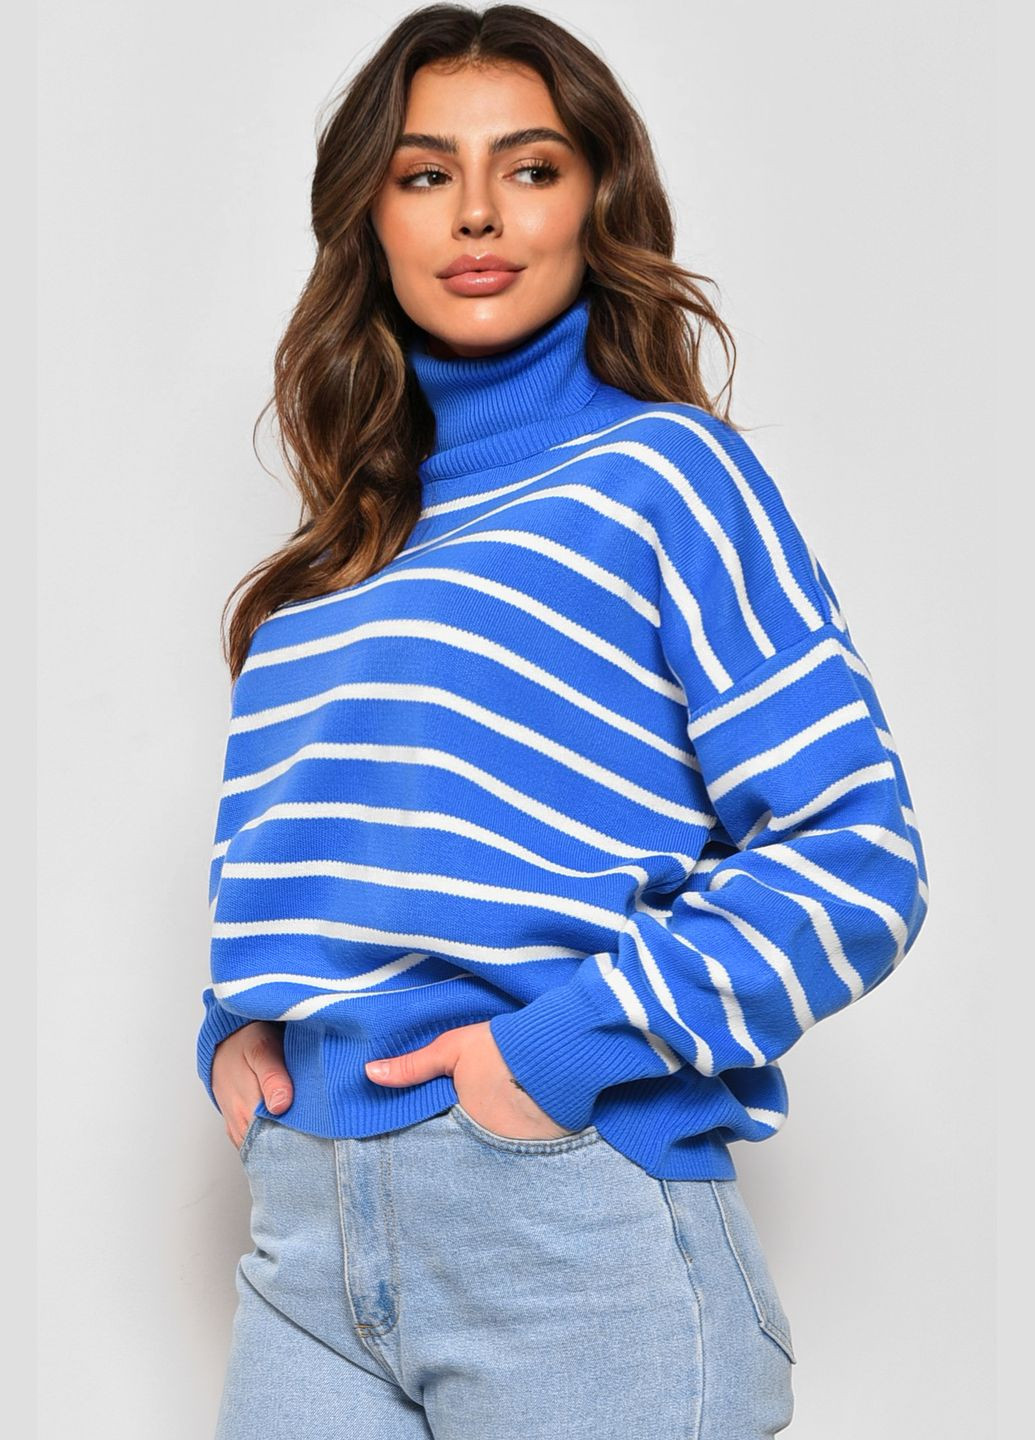 Синий зимний свитер женский в полоску синего цвета пуловер Let's Shop